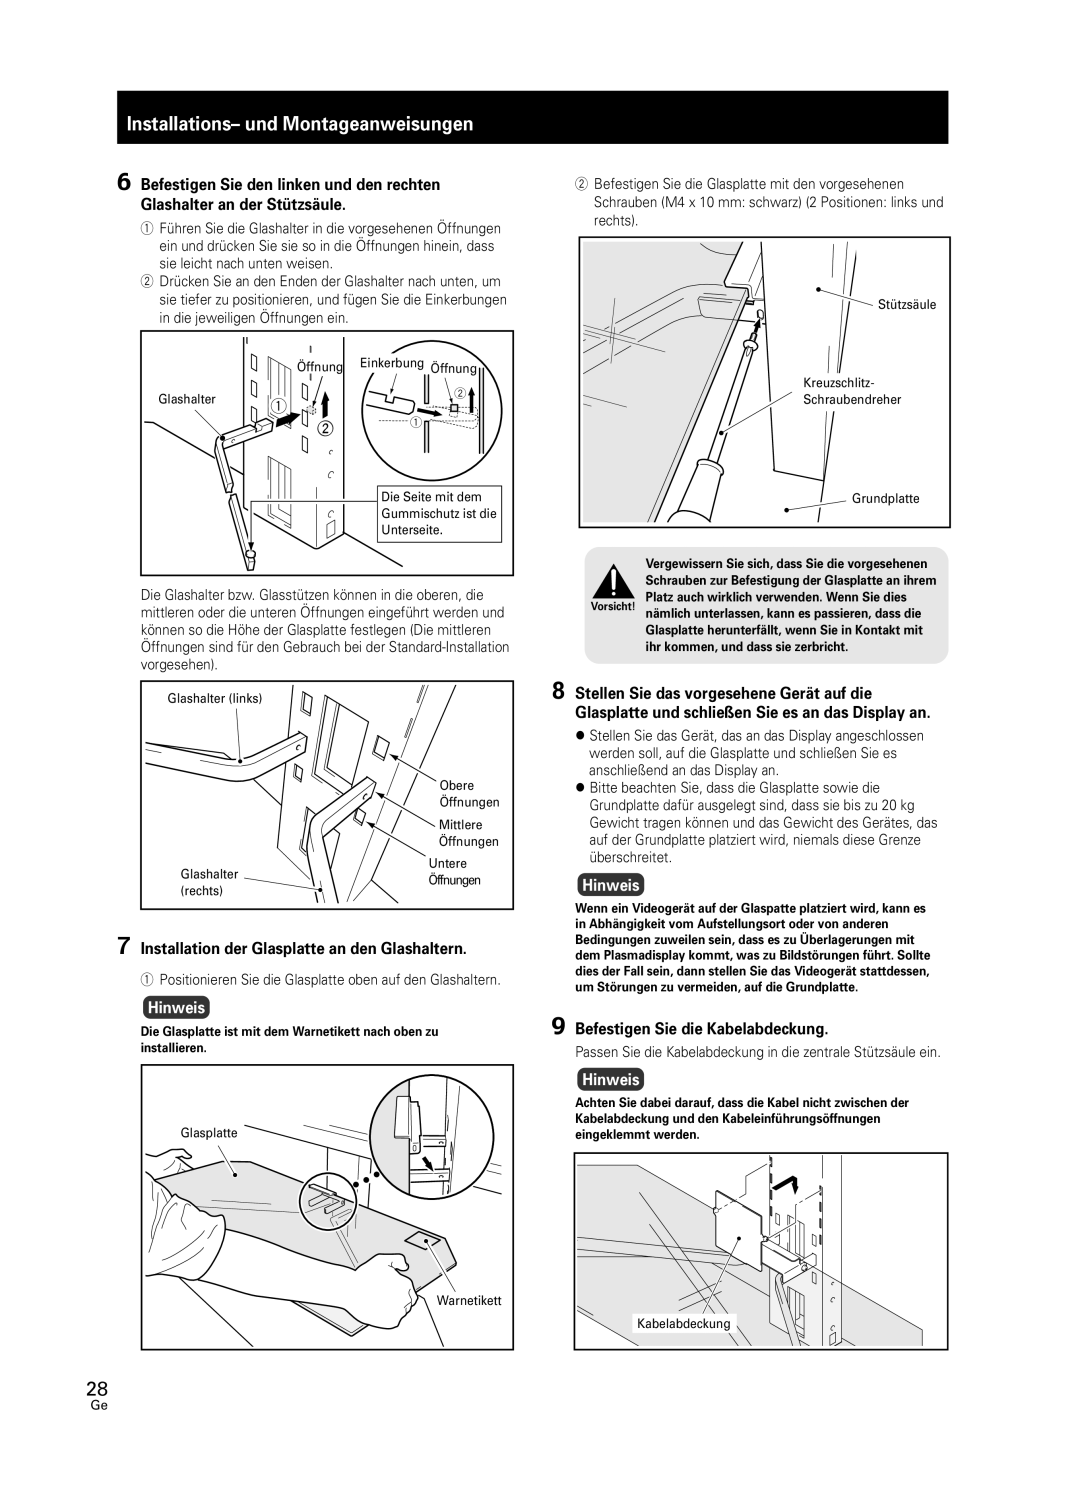 Pioneer PDK-FS05 manual Installations- und Montageanweisungen, 7Installation der Glasplatte an den Glashaltern, Hinweis 